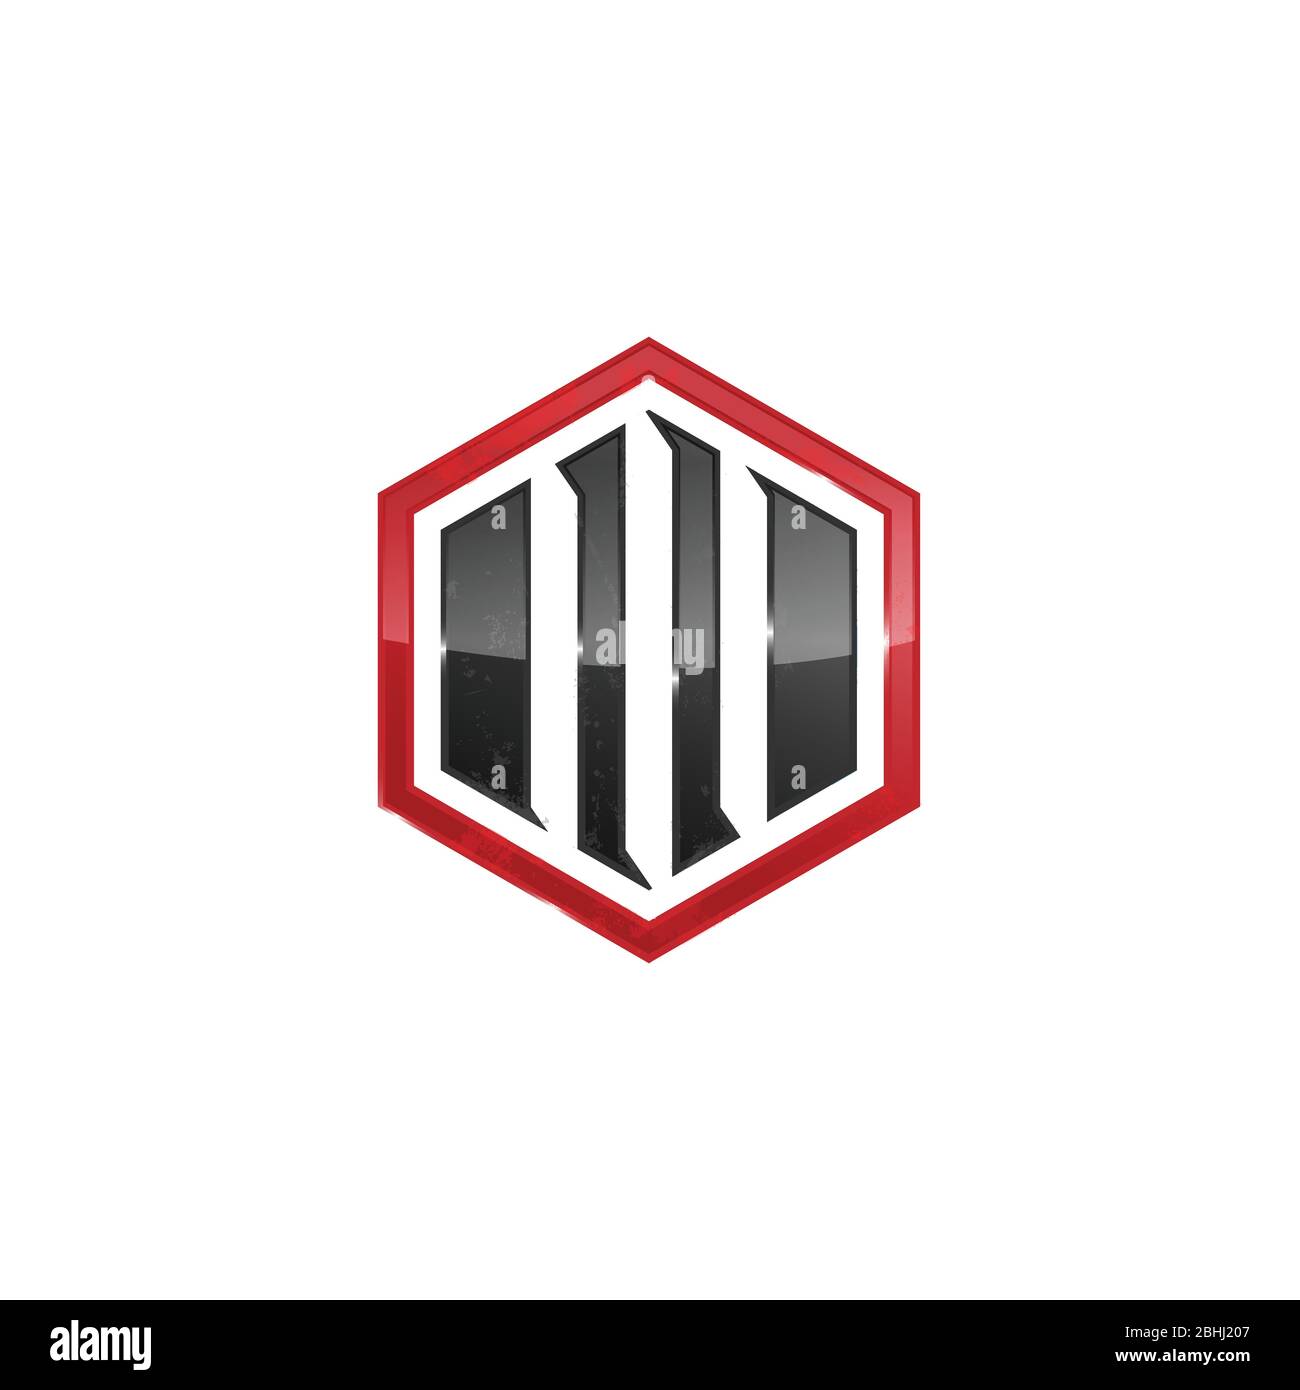 Abstrakt glänzend sechseckige Form Logo-Design-Bild isoliert auf einem weißen Hintergrund Stock Vektor